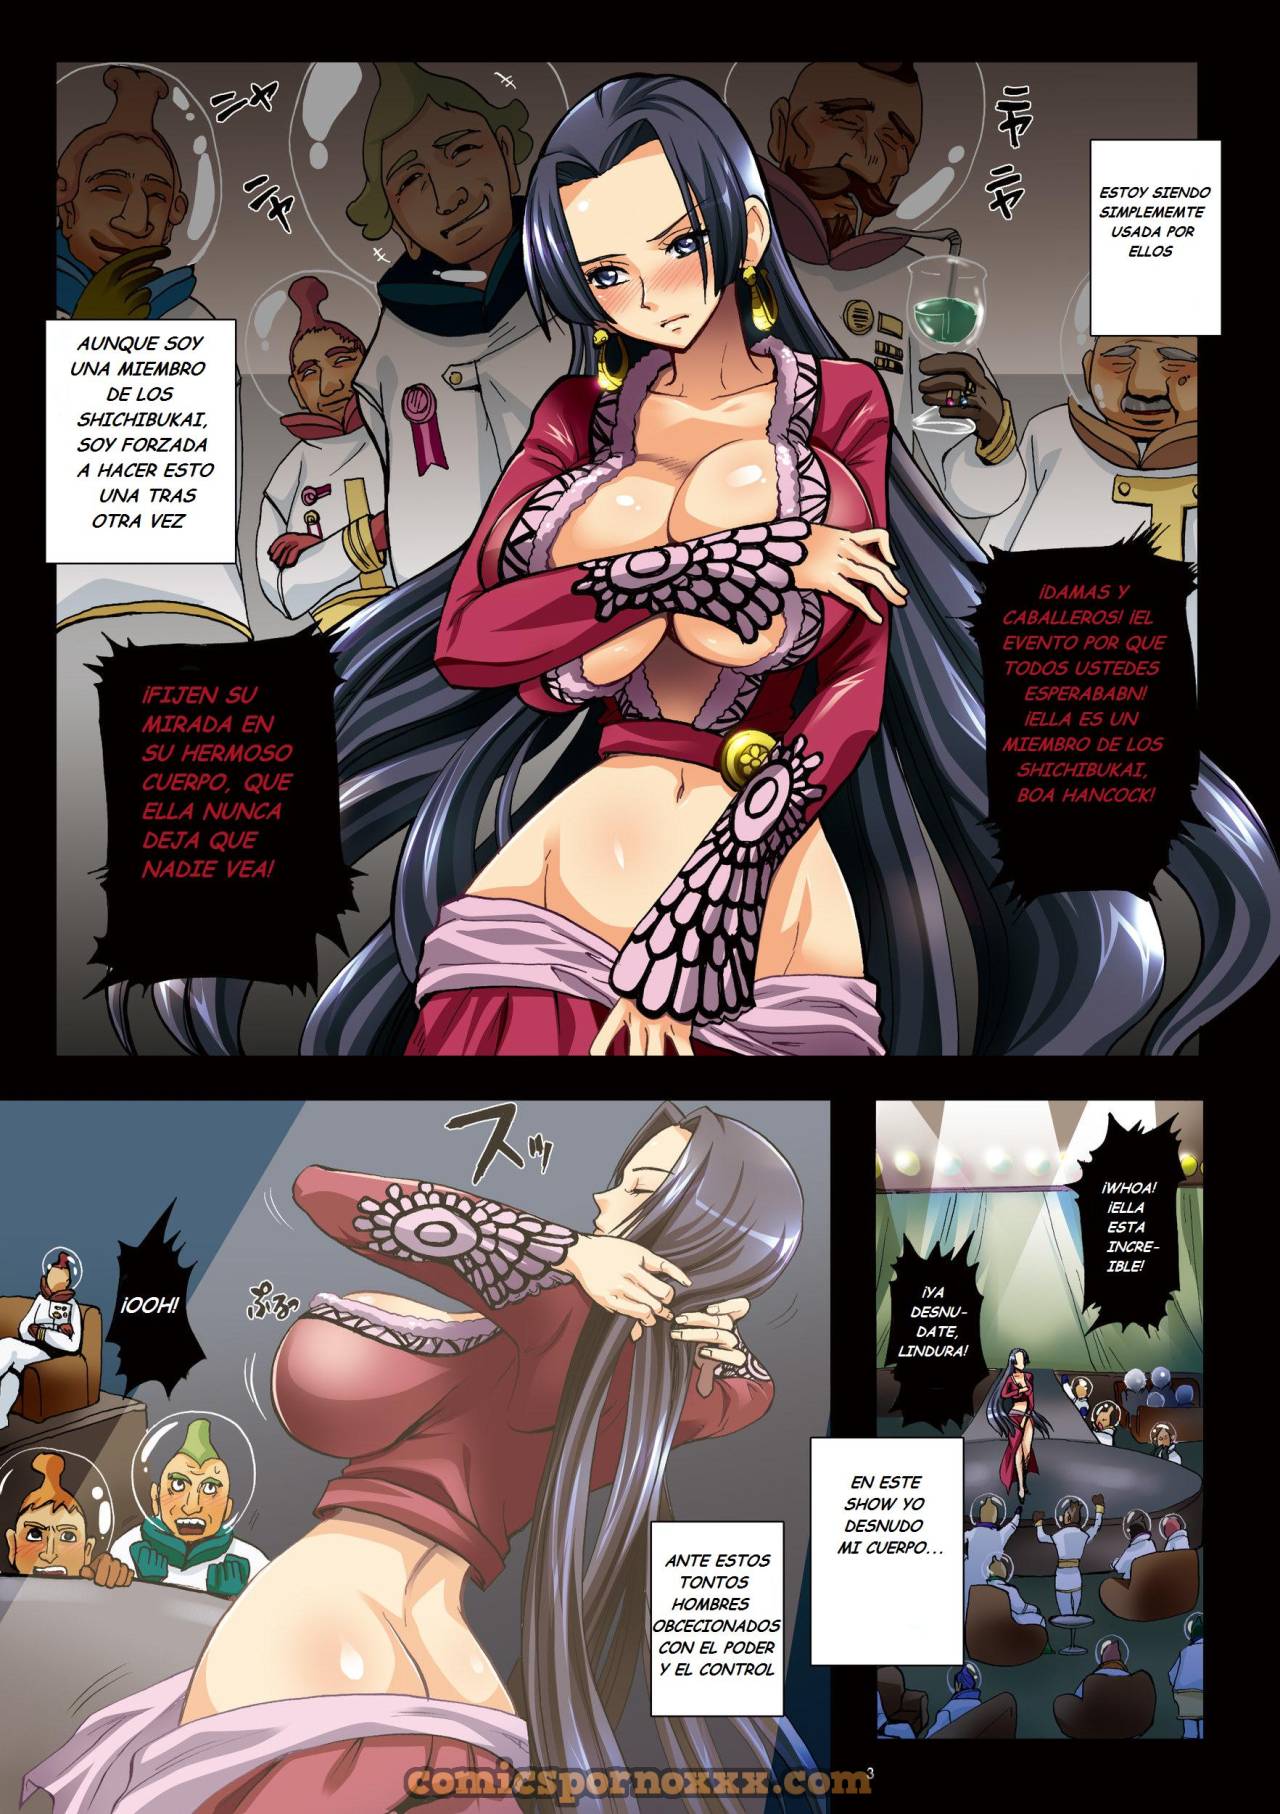 Slave Empress Snake Rape Strip Show - 3 - Comics Porno - Hentai Manga - Cartoon XXX